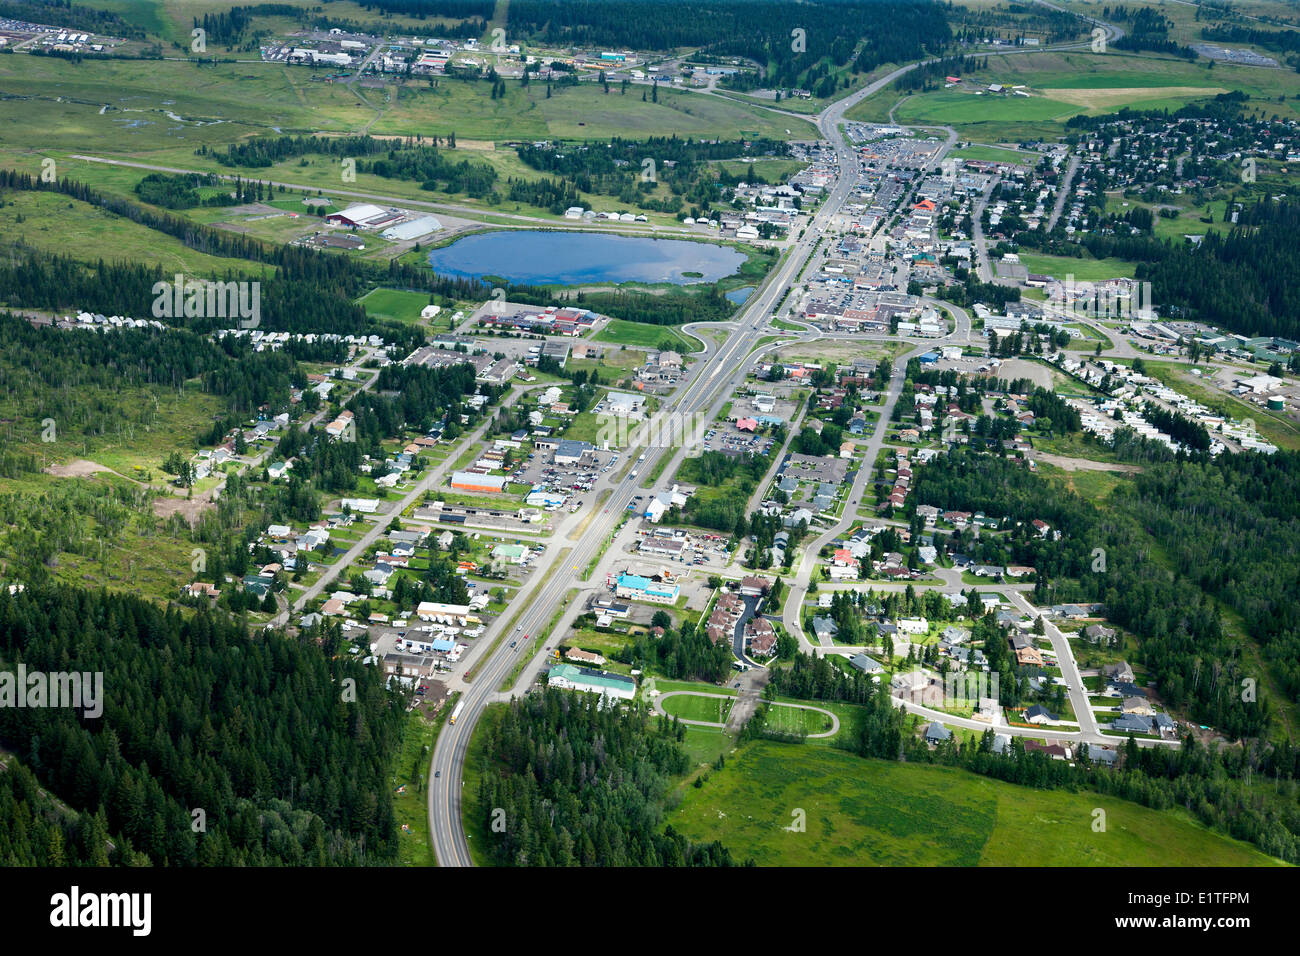 Les images aériennes sur la région de Cariboo en Colombie-Britannique Banque D'Images